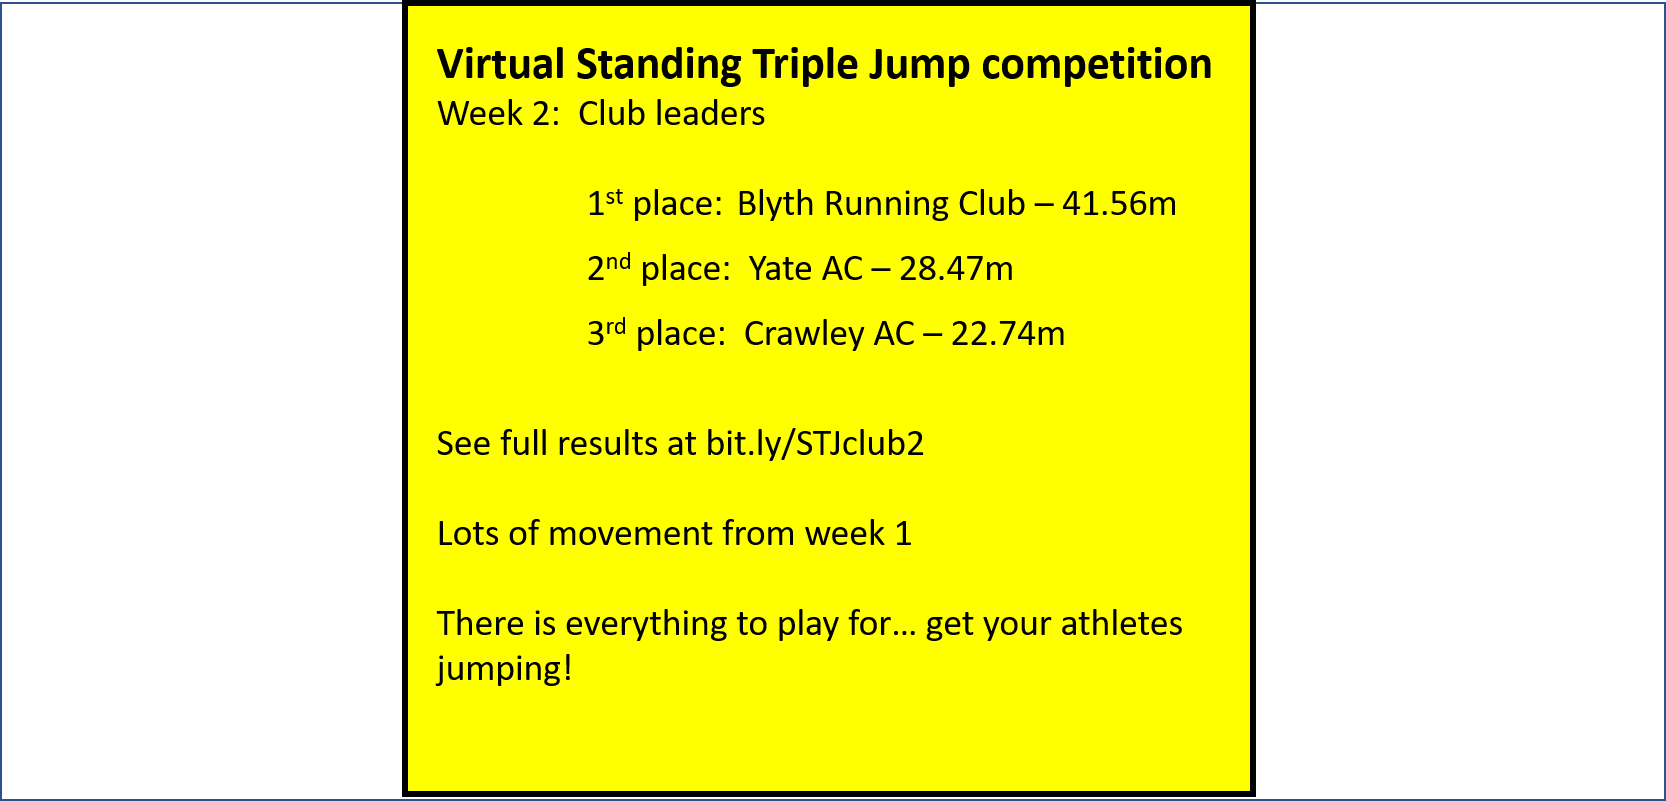 Virtual Standing Triple Jump - Club results week 2